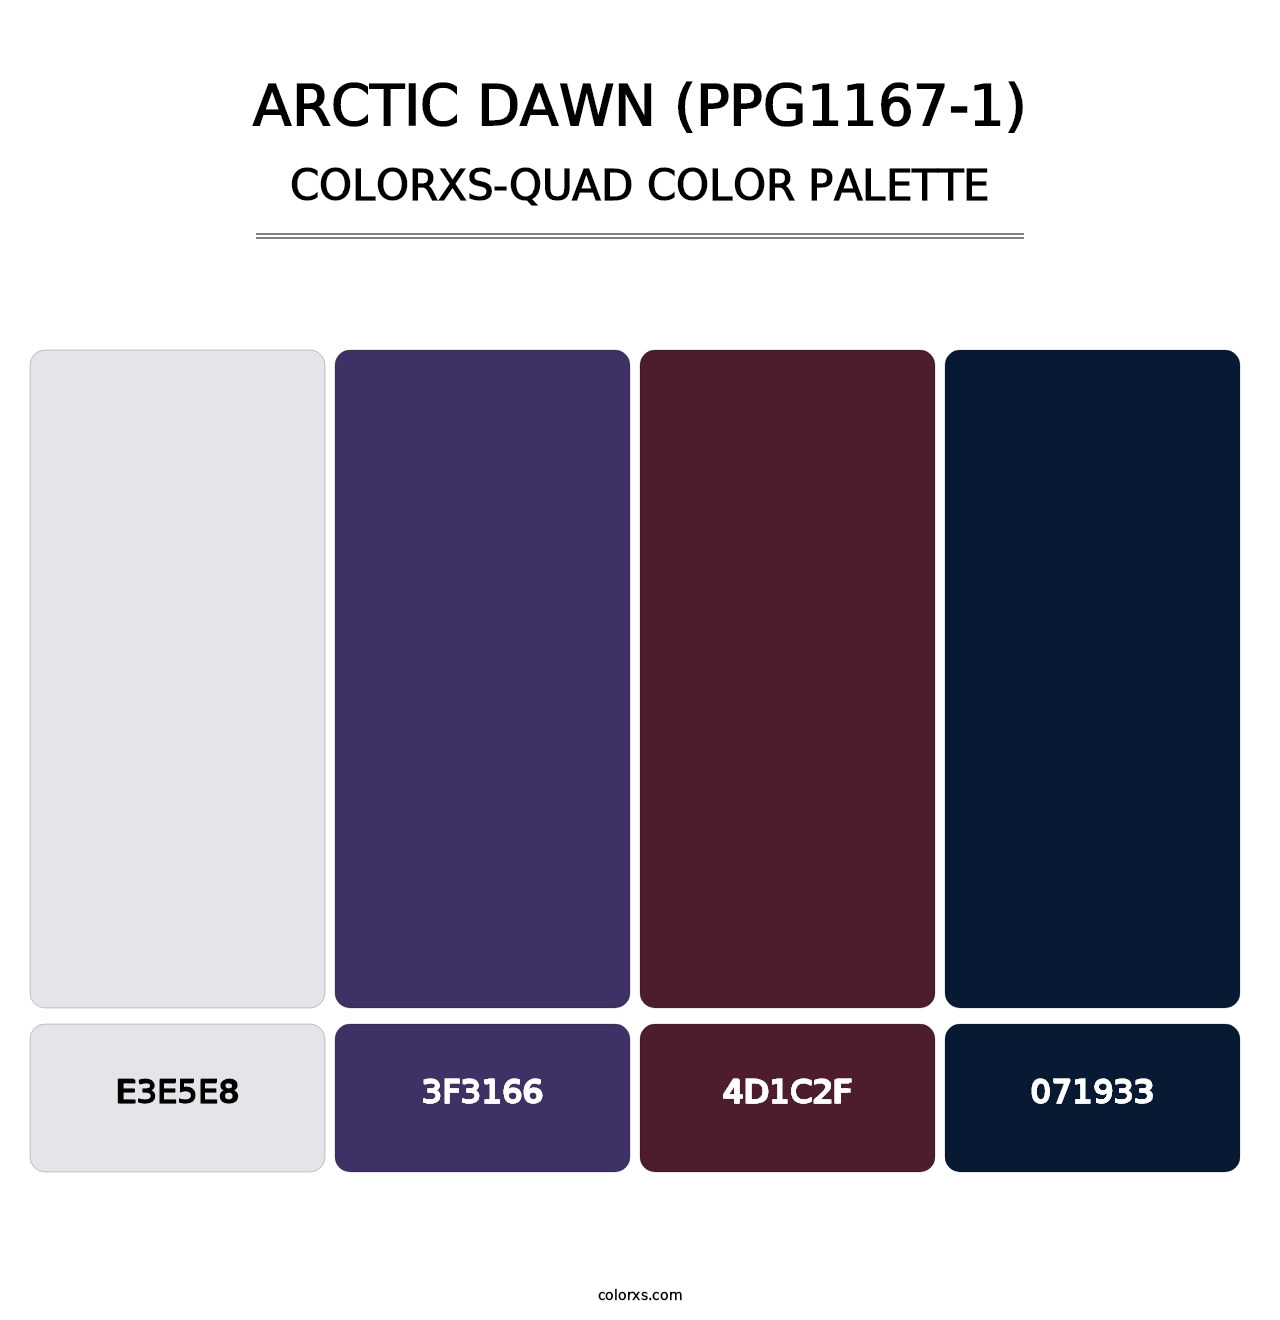 Arctic Dawn (PPG1167-1) - Colorxs Quad Palette